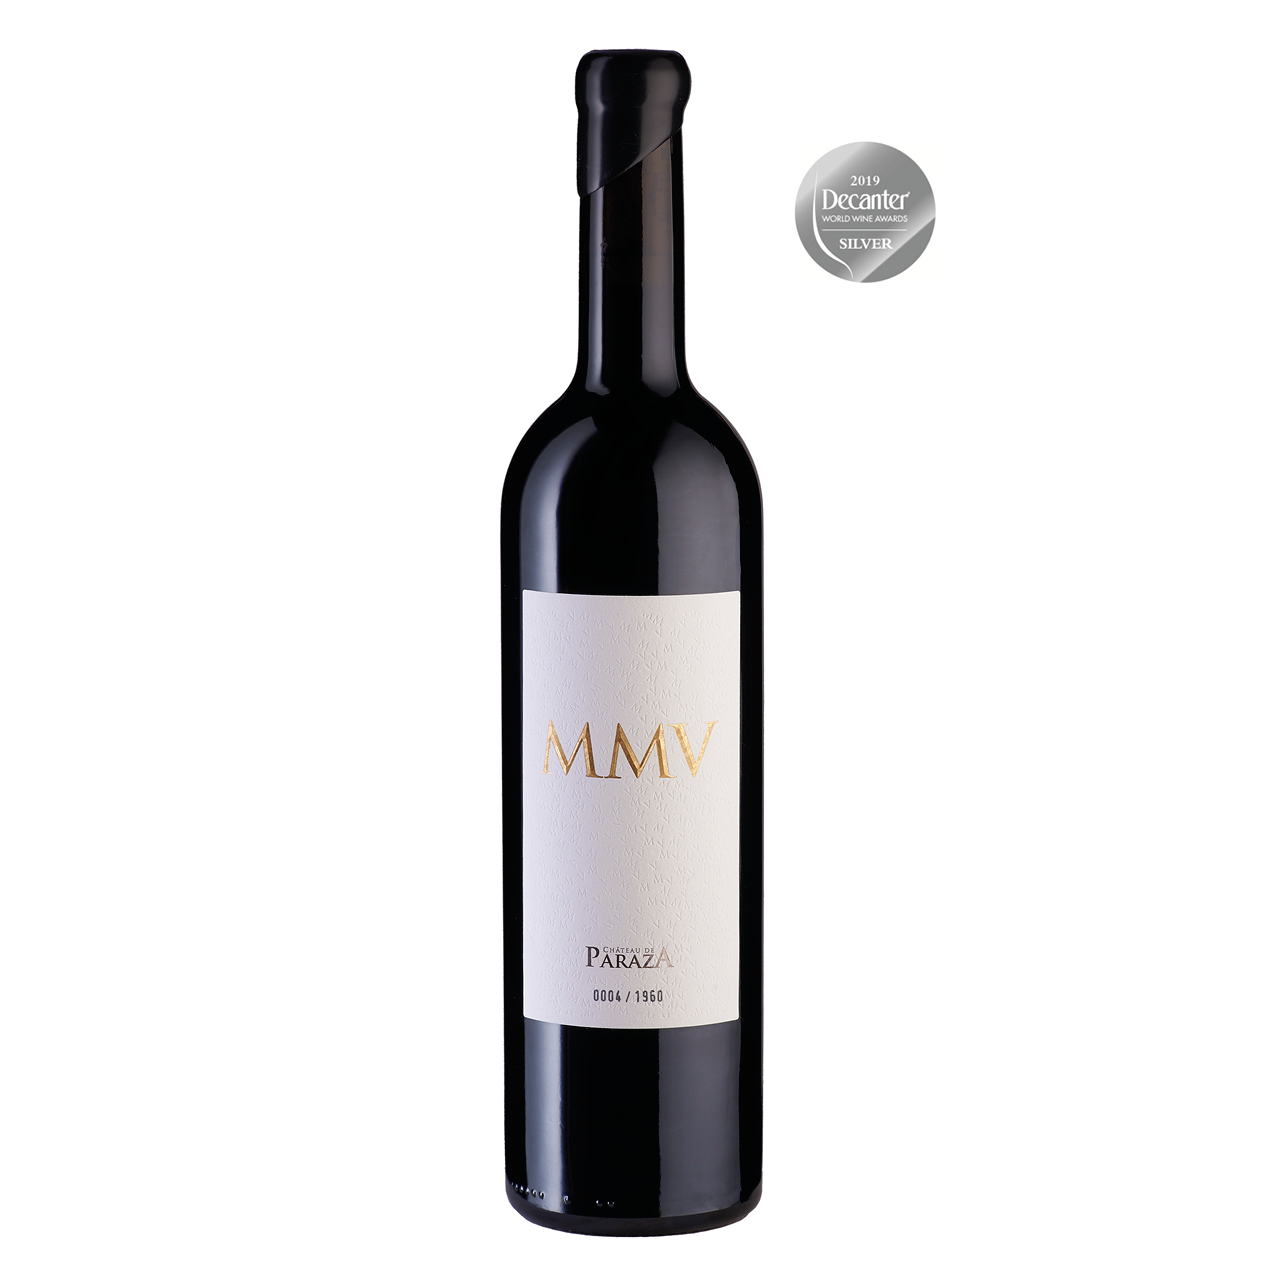 MMV AOC Minervois Grand vin du Languedoc Chateau de Paraza